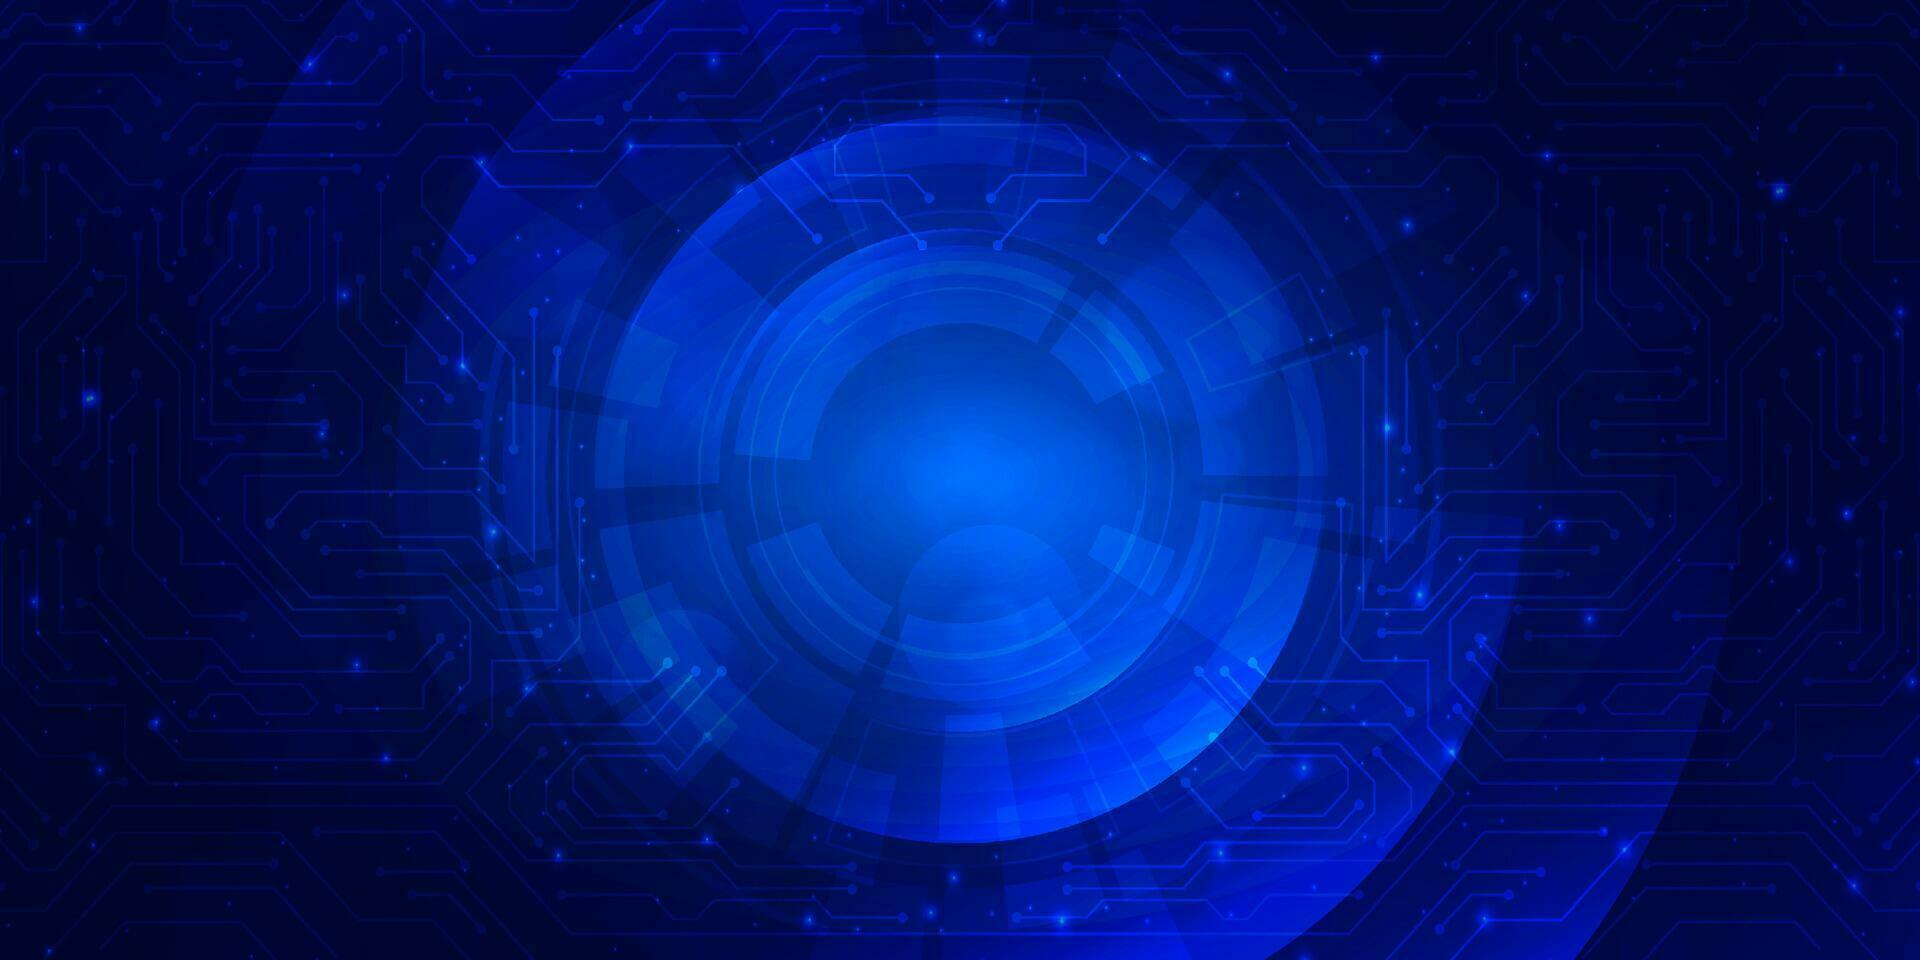 abstrakte digitale technologie futuristische platine blauer hintergrund, cyber-science-tech-layout, innovation zukunft ai big data, globale internet-netzwerkverbindung, wolken-hi-tech-illustrationsvektor vektor